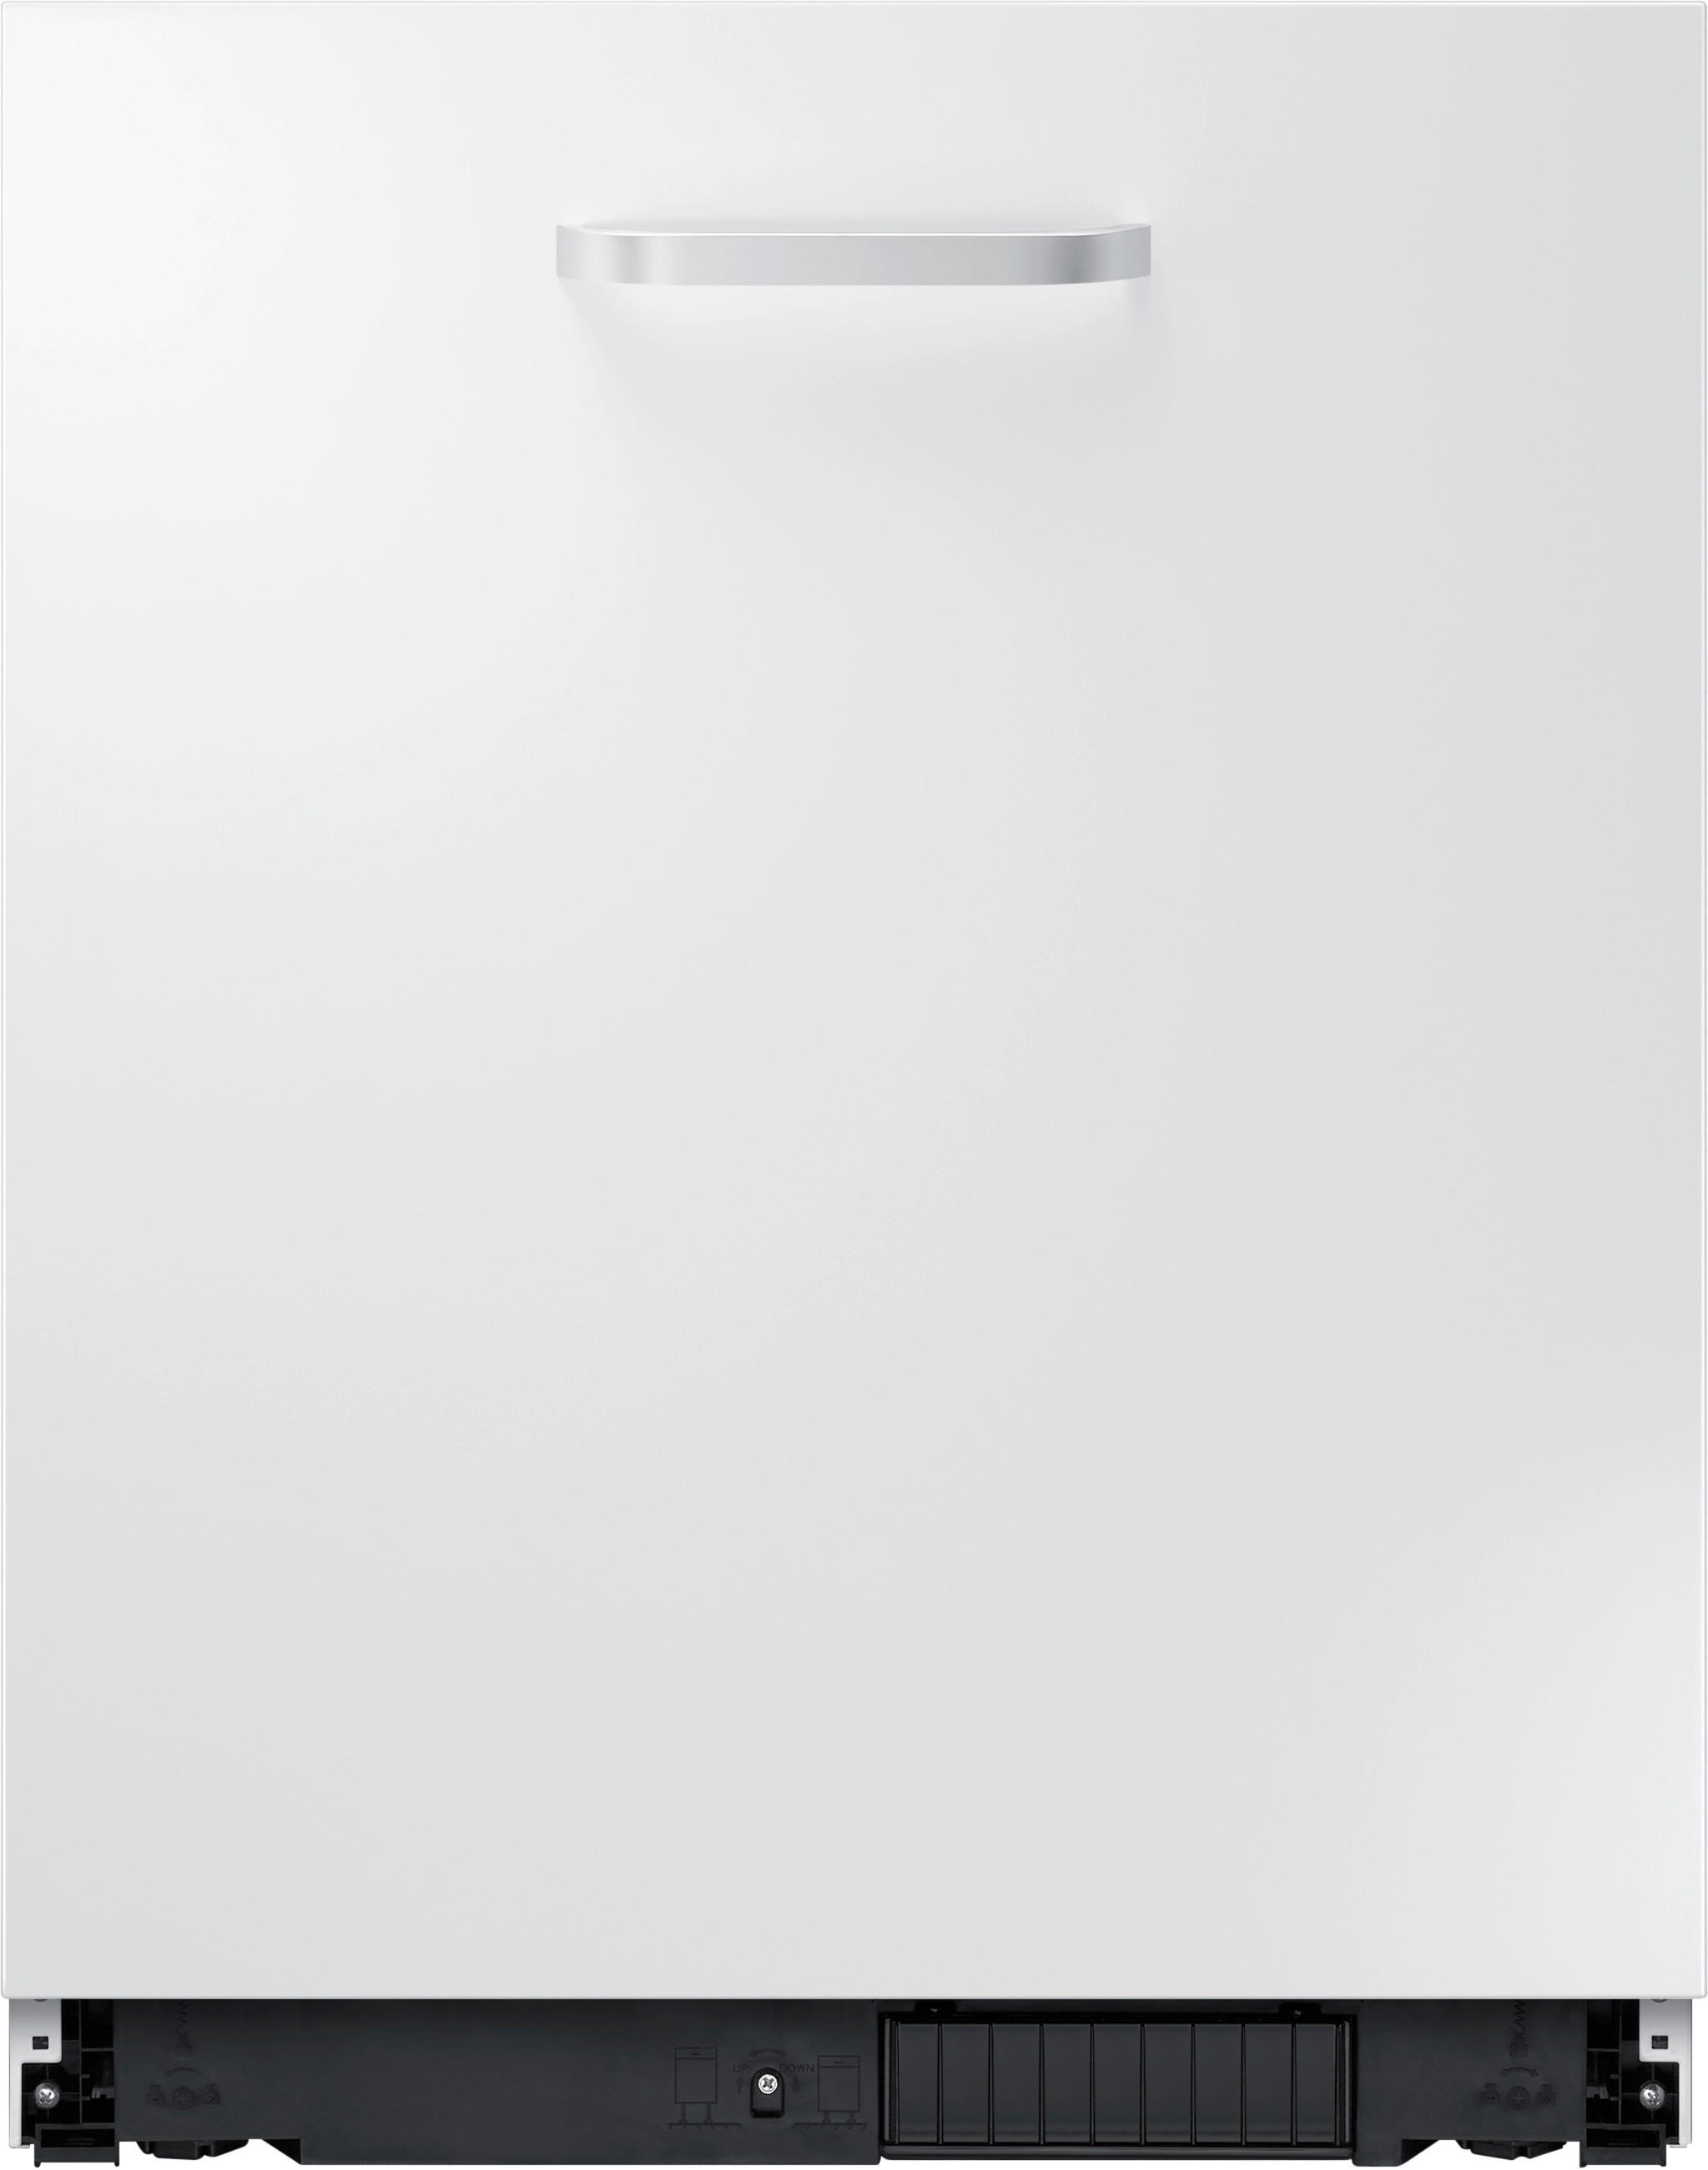 GESCHIRRSPÜLER DW60M6070IB/ET  - Basics, Kunststoff/Metall (59,8/81,5/55cm) - Samsung